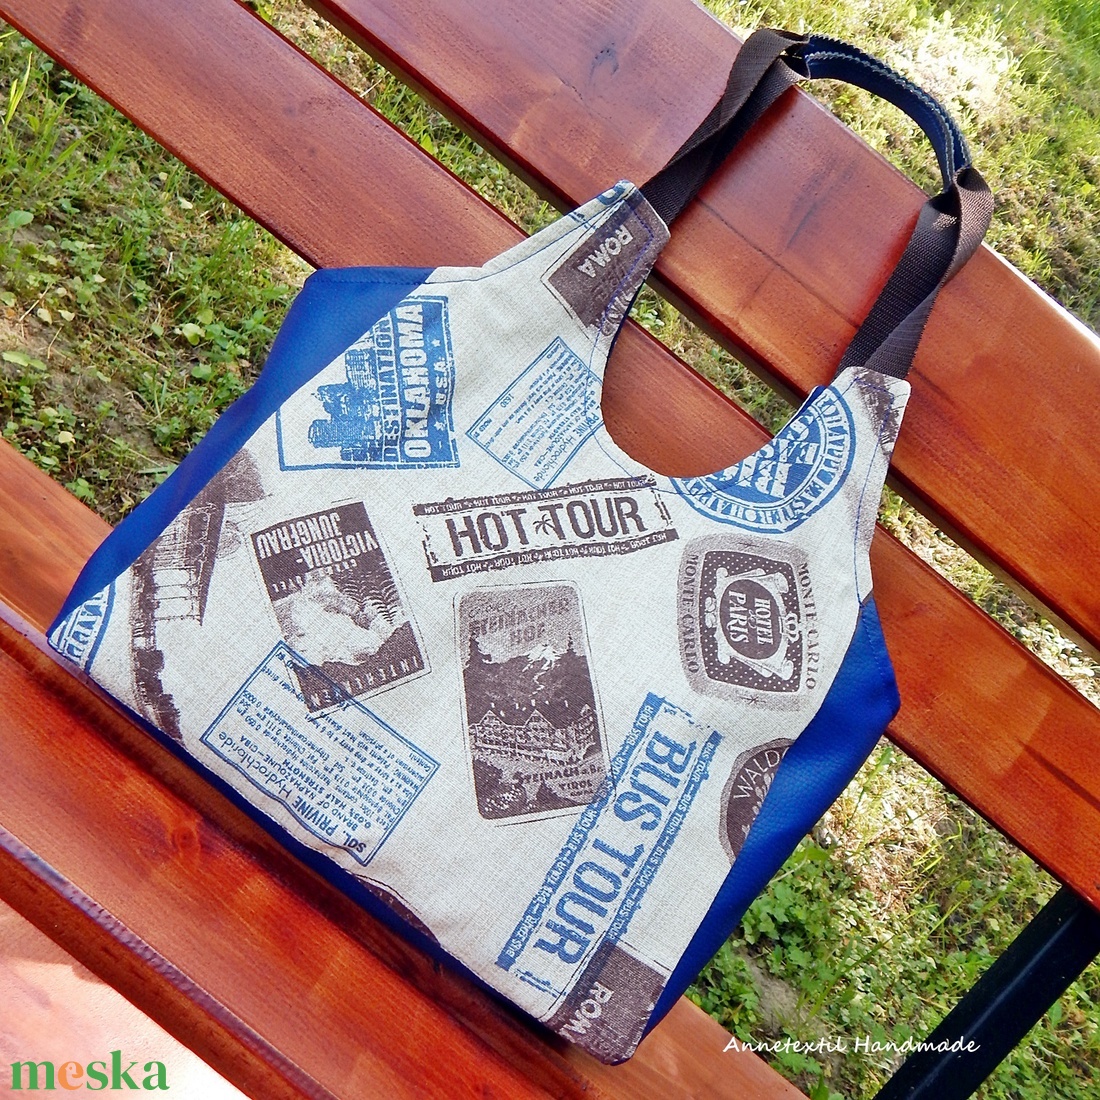 Utazás mintás kék Women Tote Bag - táska & tok - bevásárlás & shopper táska - shopper, textiltáska, szatyor - Meska.hu